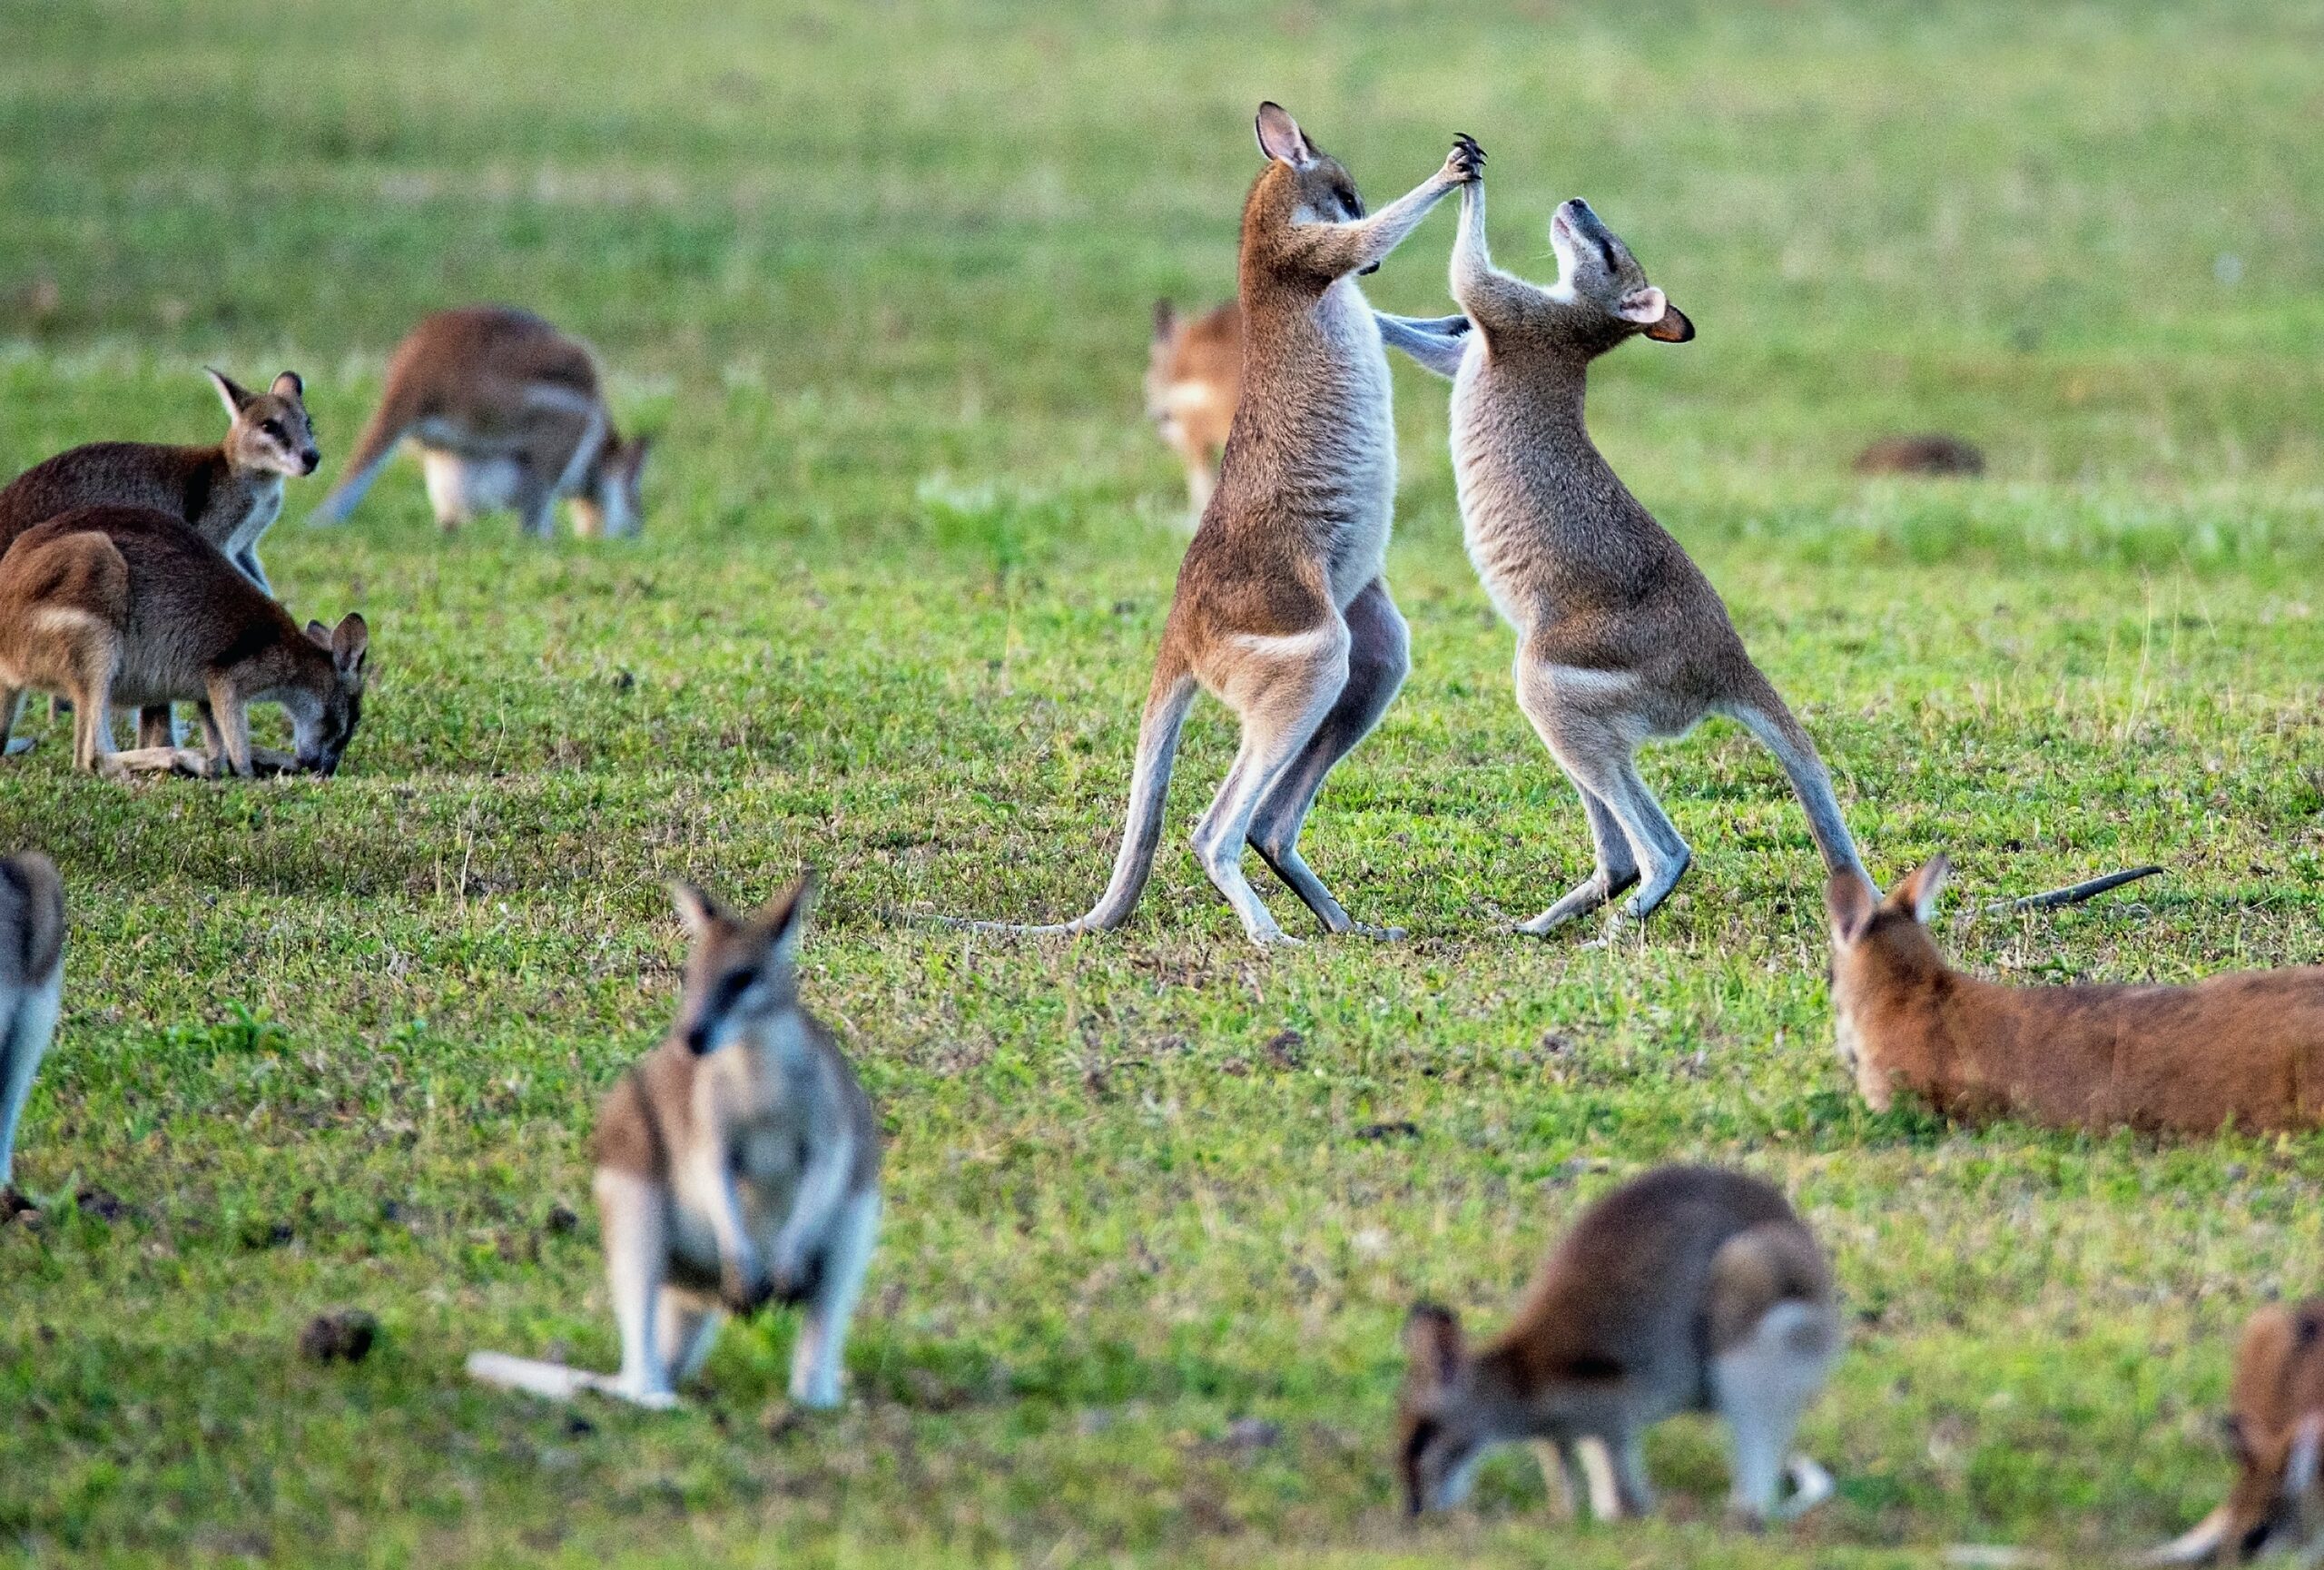 Kangaroos eating and playing